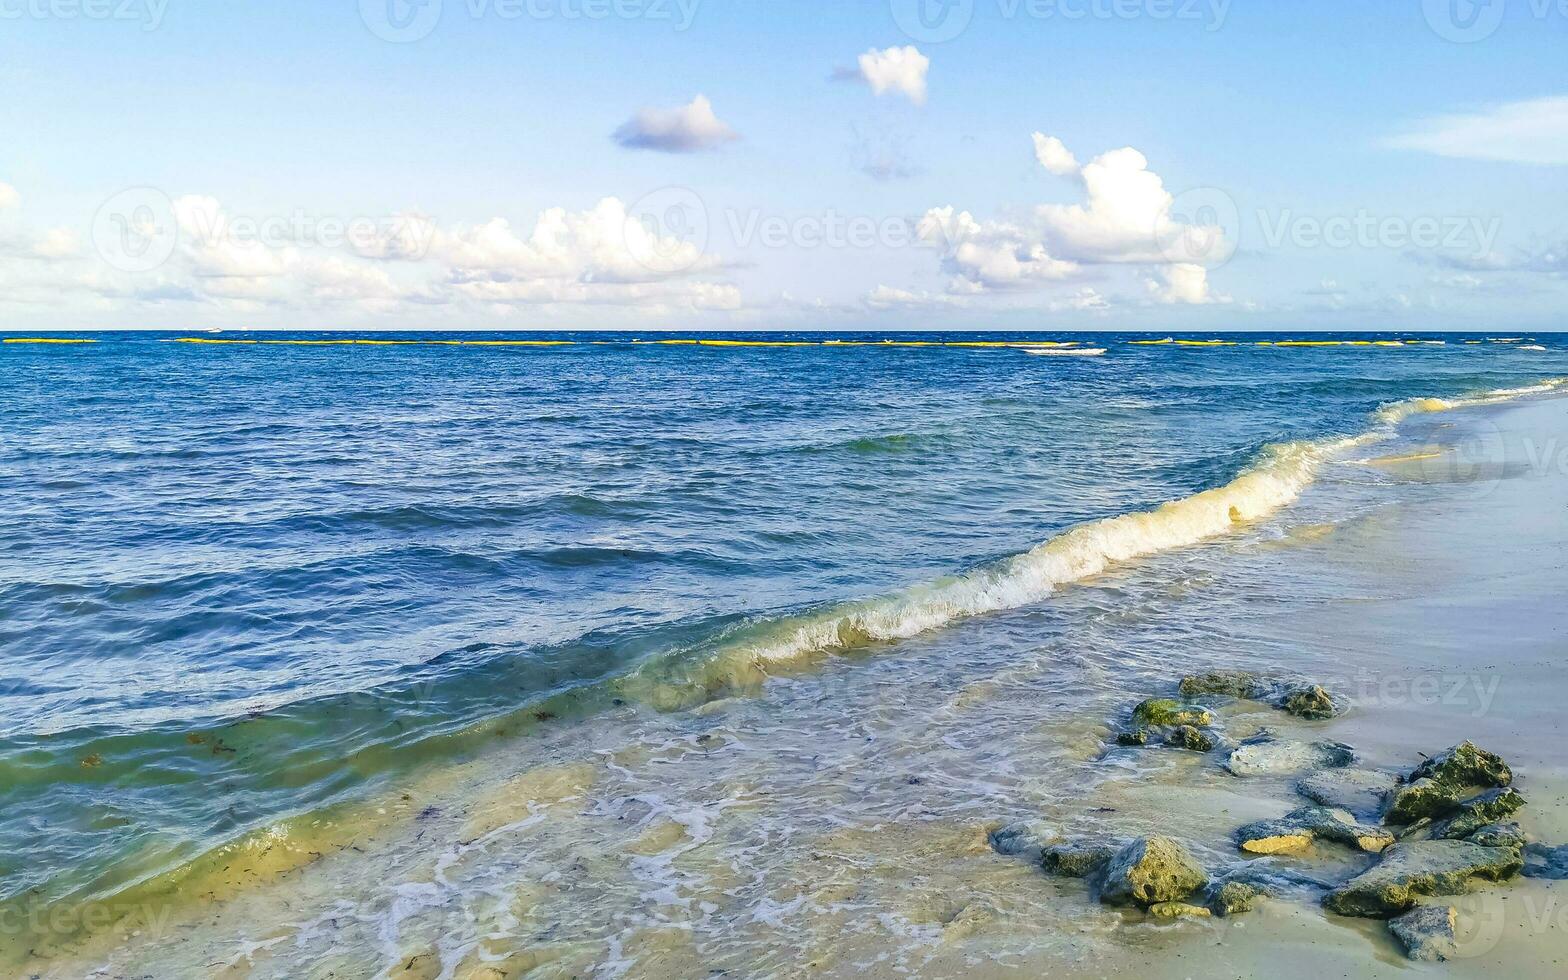 piedras rocas corales turquesa verde azul agua playa mexico. foto